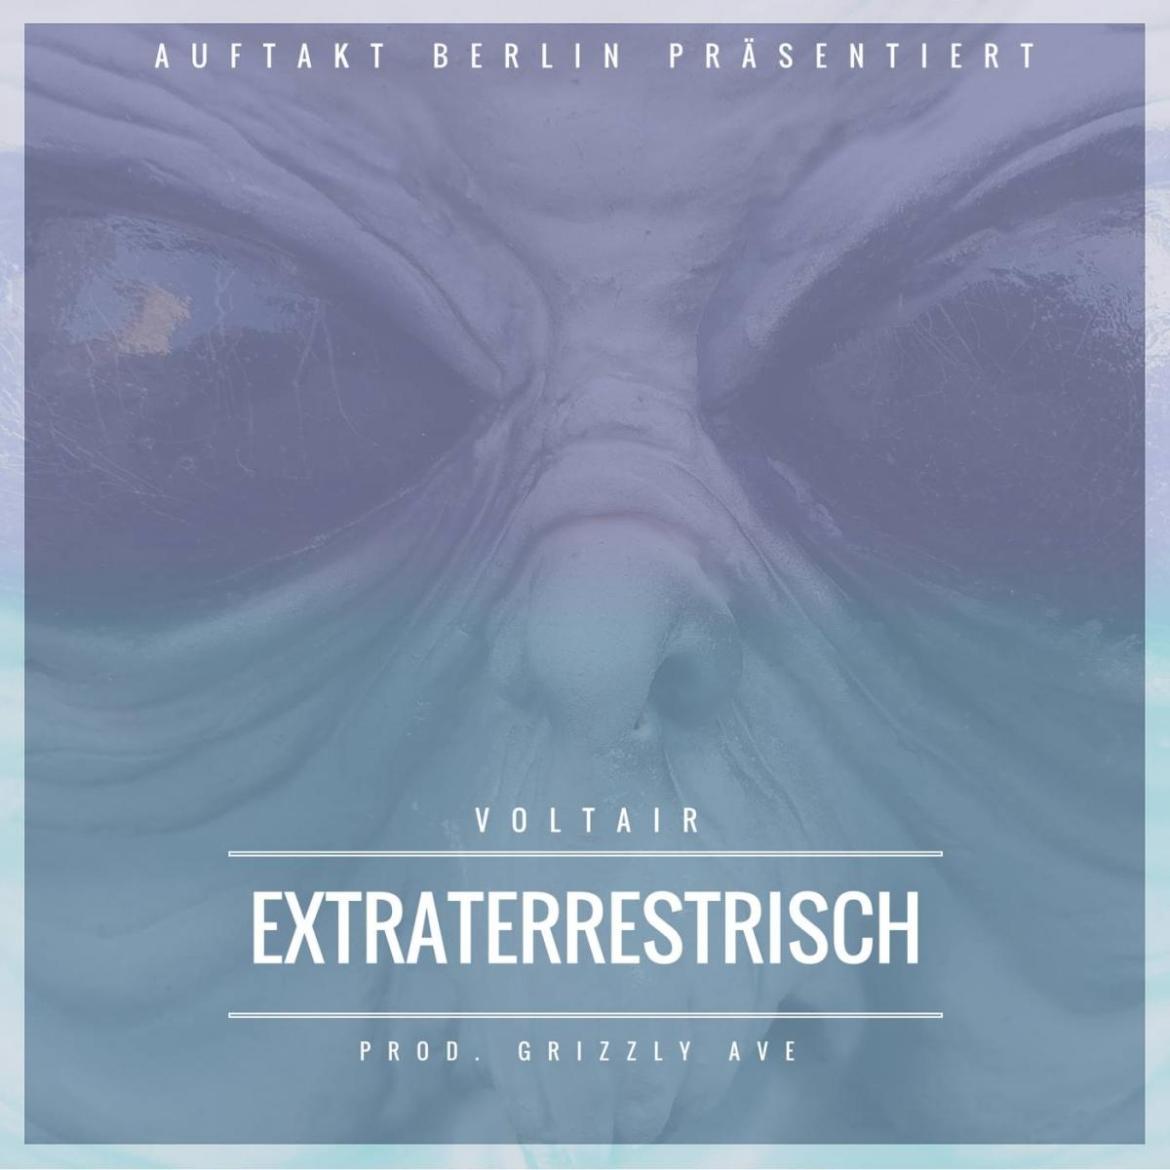 Voltair - Extraterrestrisch (prod. Grizzly AVE)